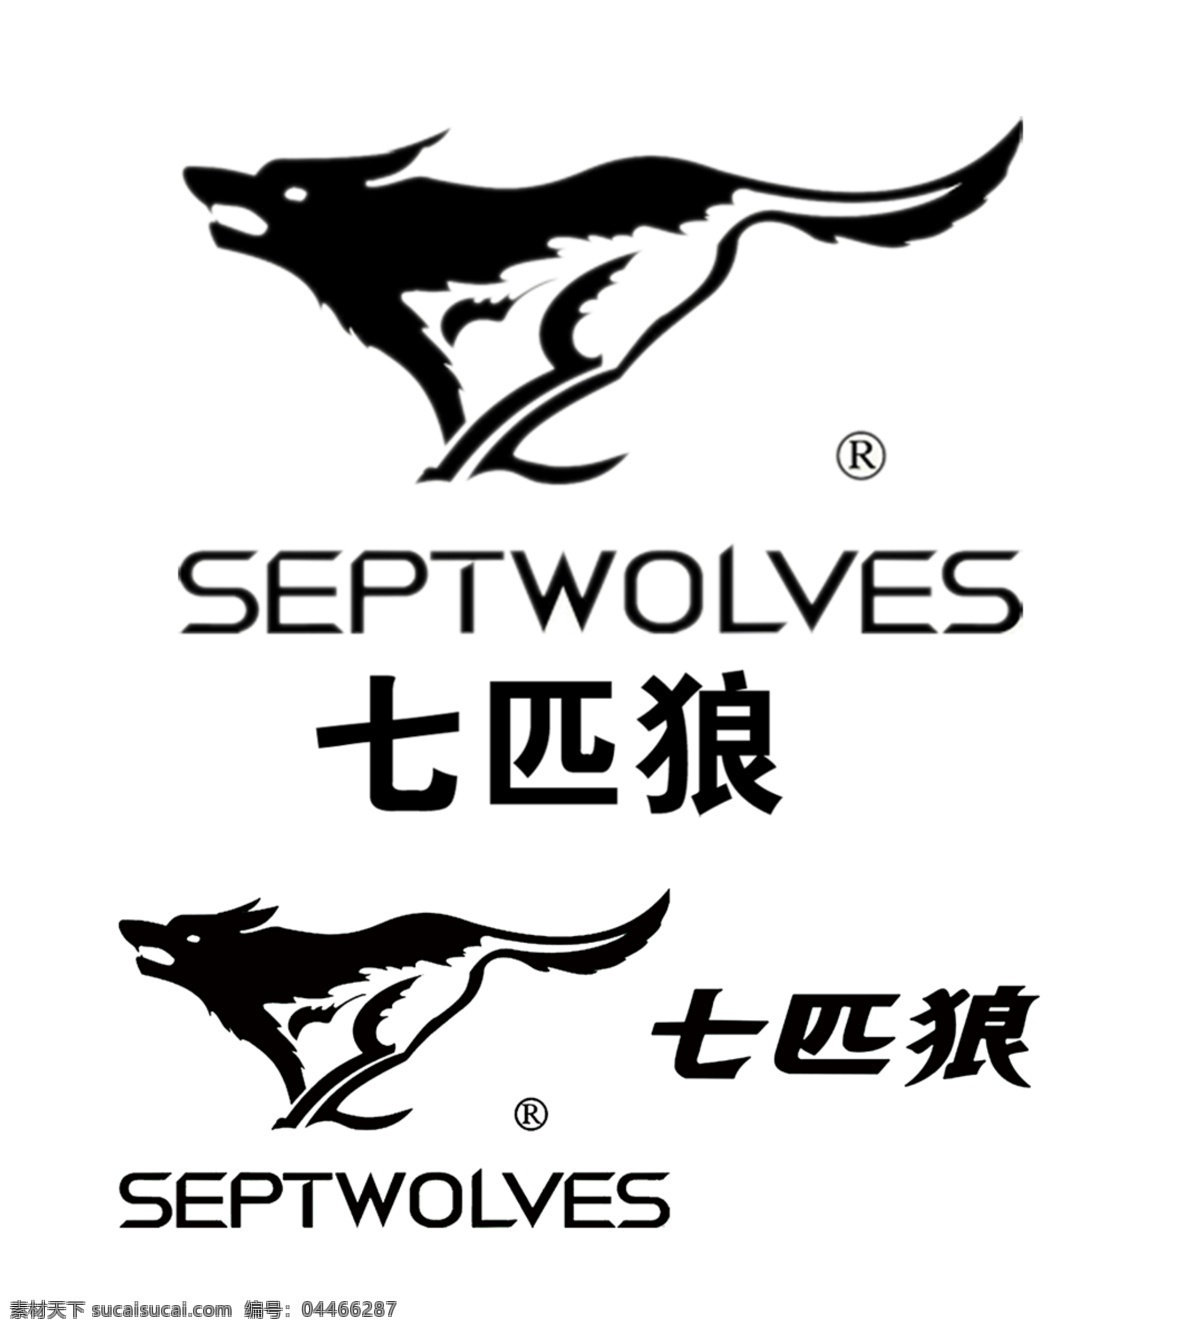 七匹狼标志 七匹狼图标 七匹狼 logo 七匹狼标识